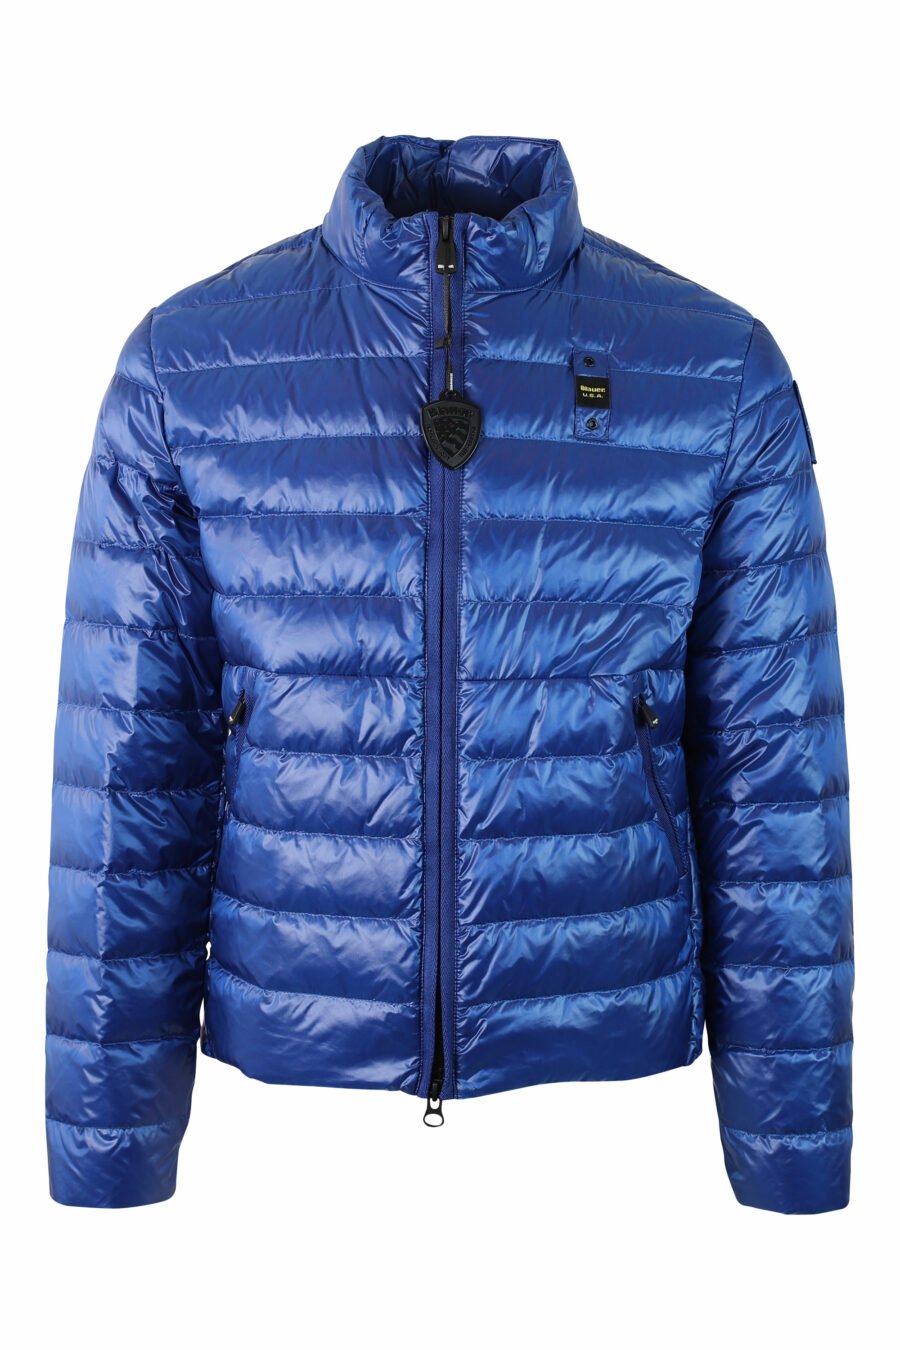 Hellblaue Jacke mit geraden Linien und Aufnäher - IMG 9788 1